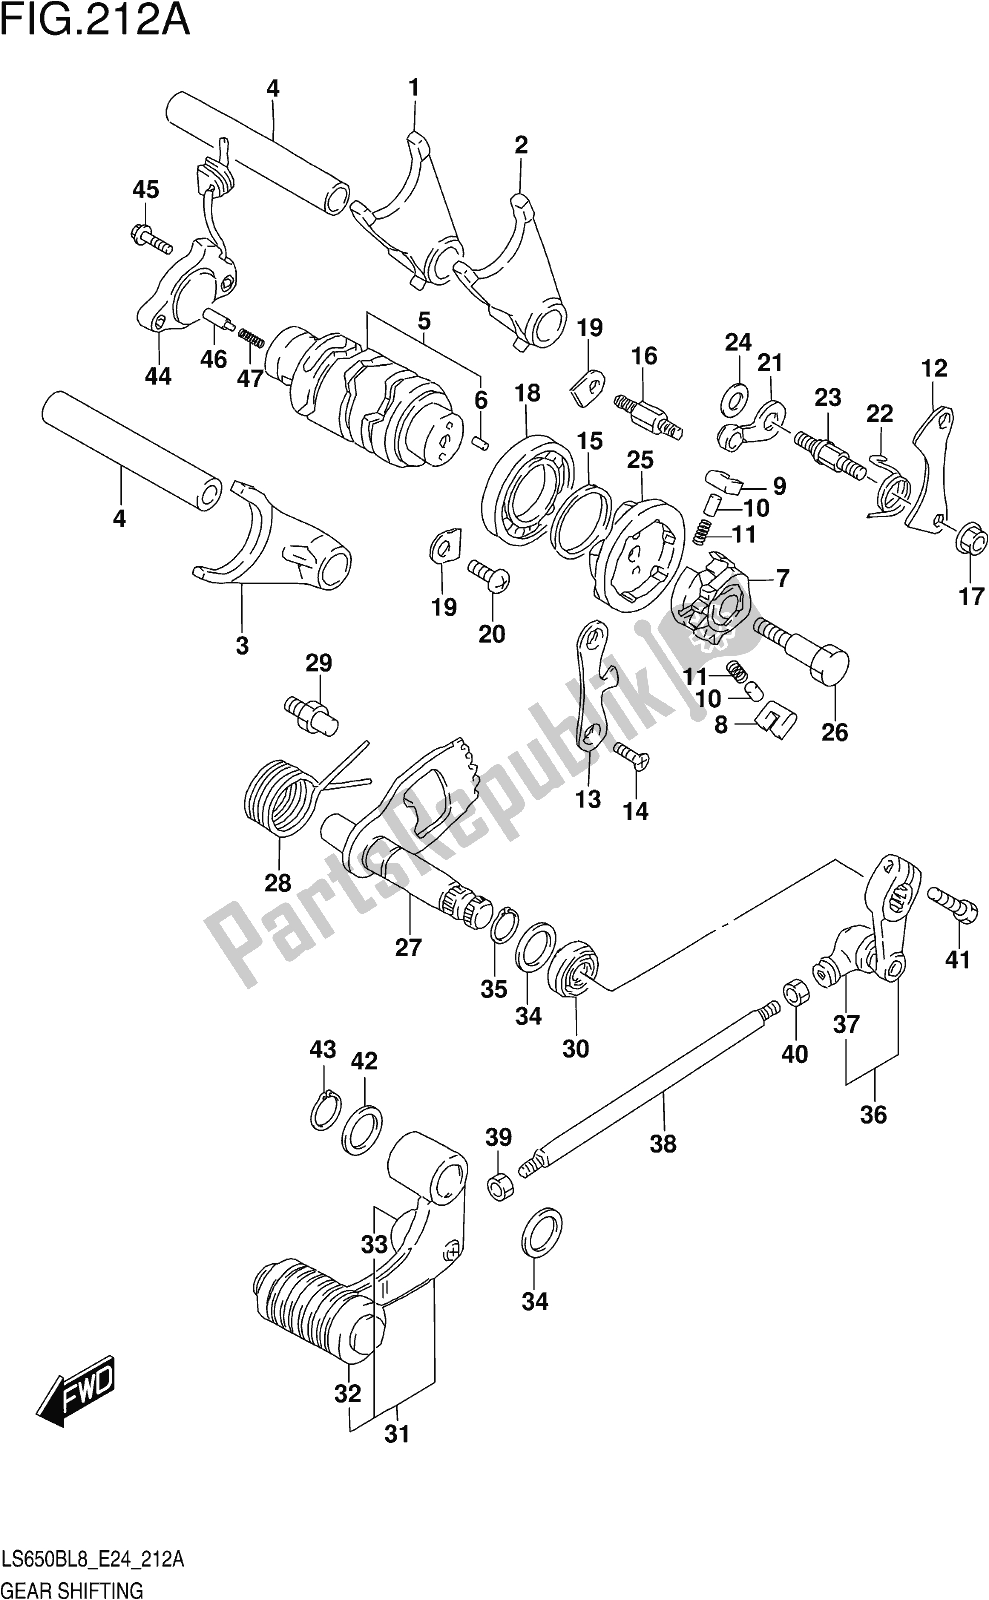 Alle onderdelen voor de Fig. 212a Gear Shifting van de Suzuki LS 650B 2018